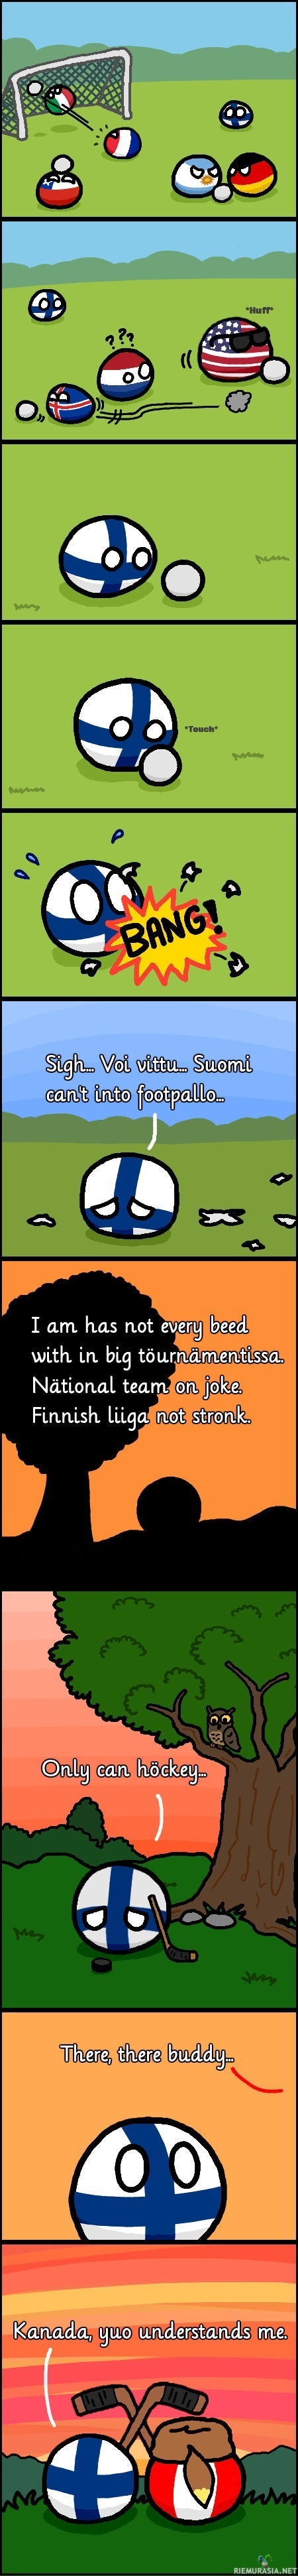 Suomi ja jalkapallon arvoturnaukset